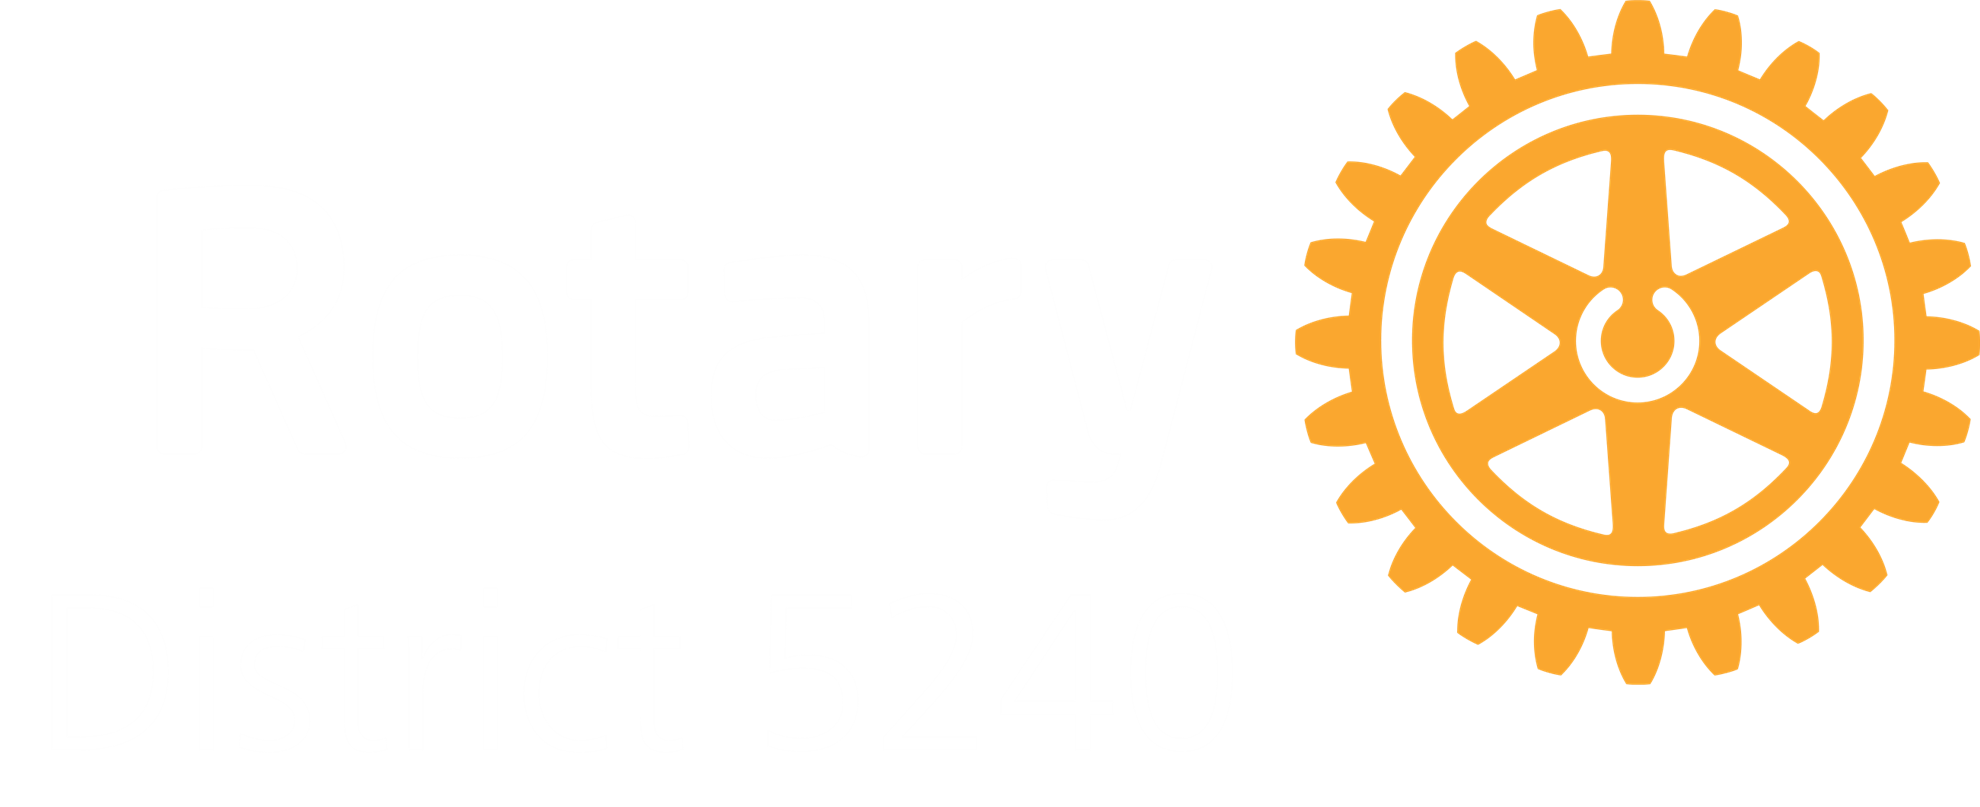 District 5240 logo